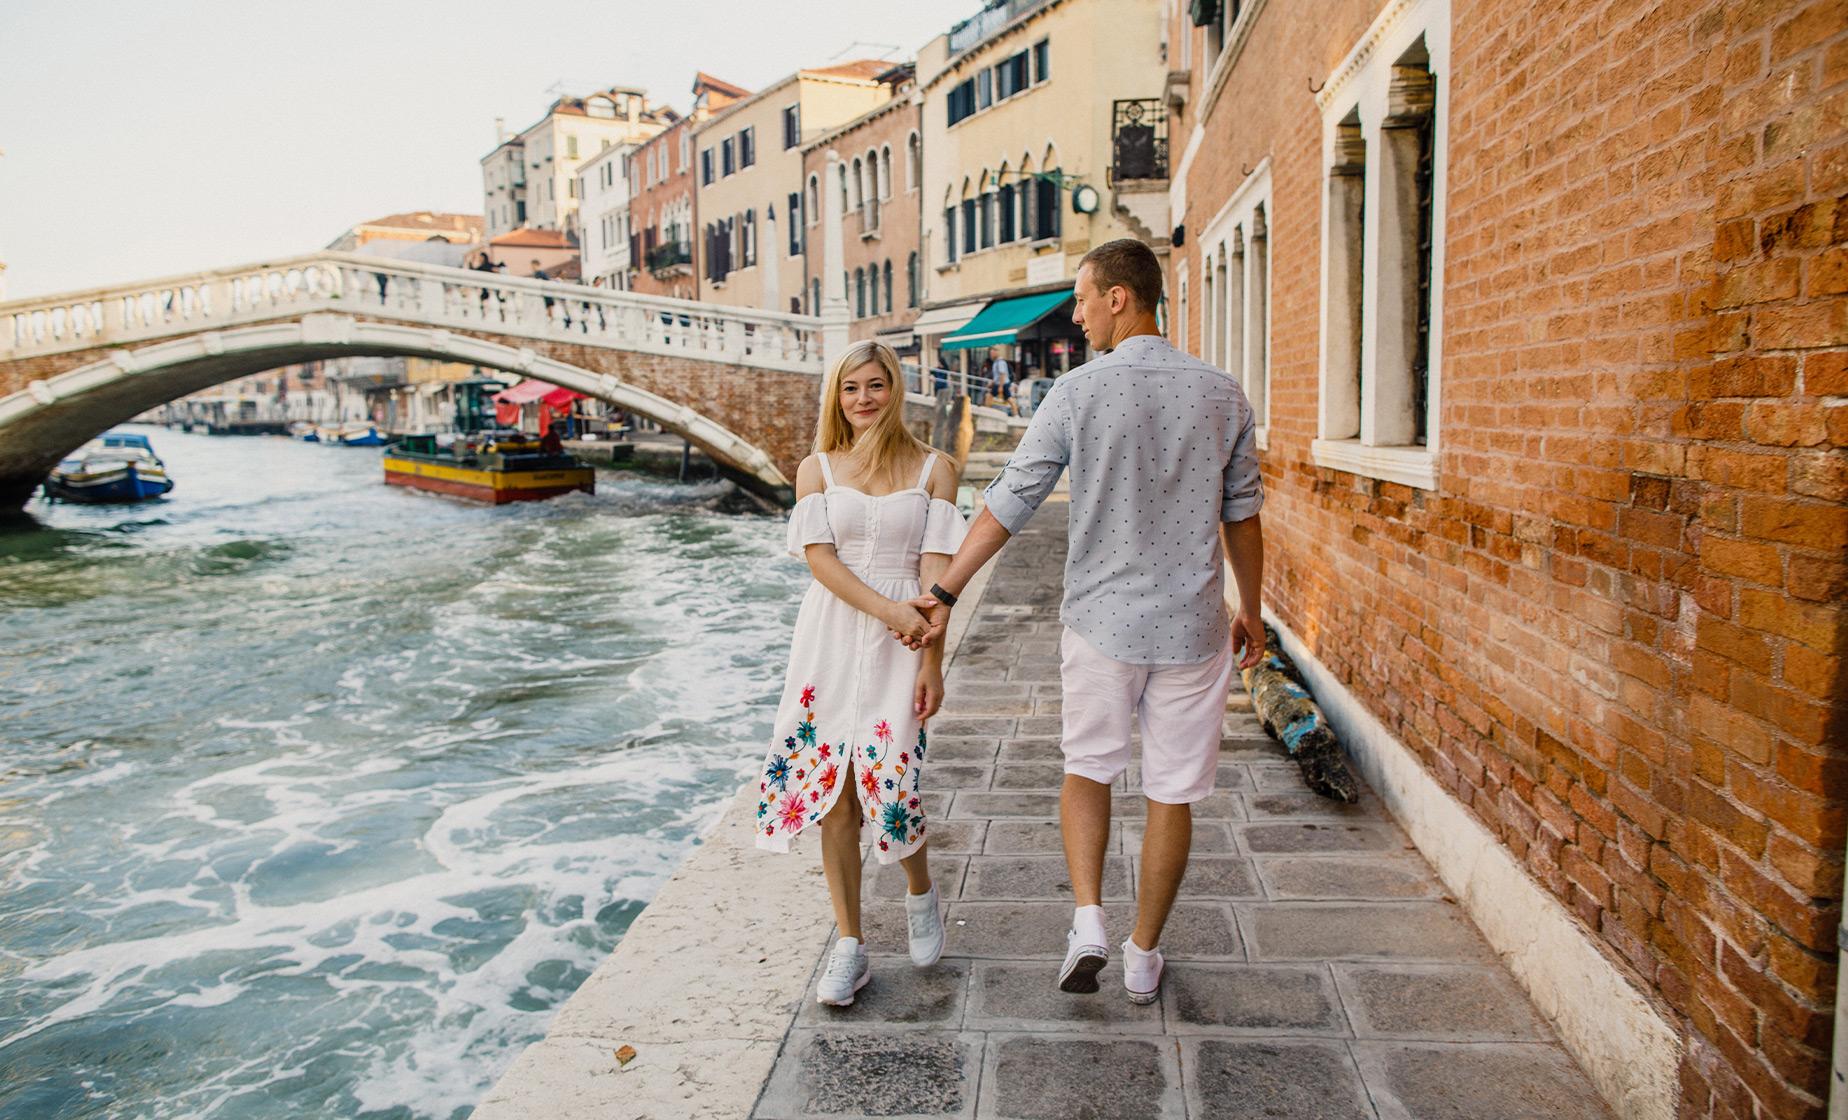 Illuminating Venice Walking Tour and Gondola Ride